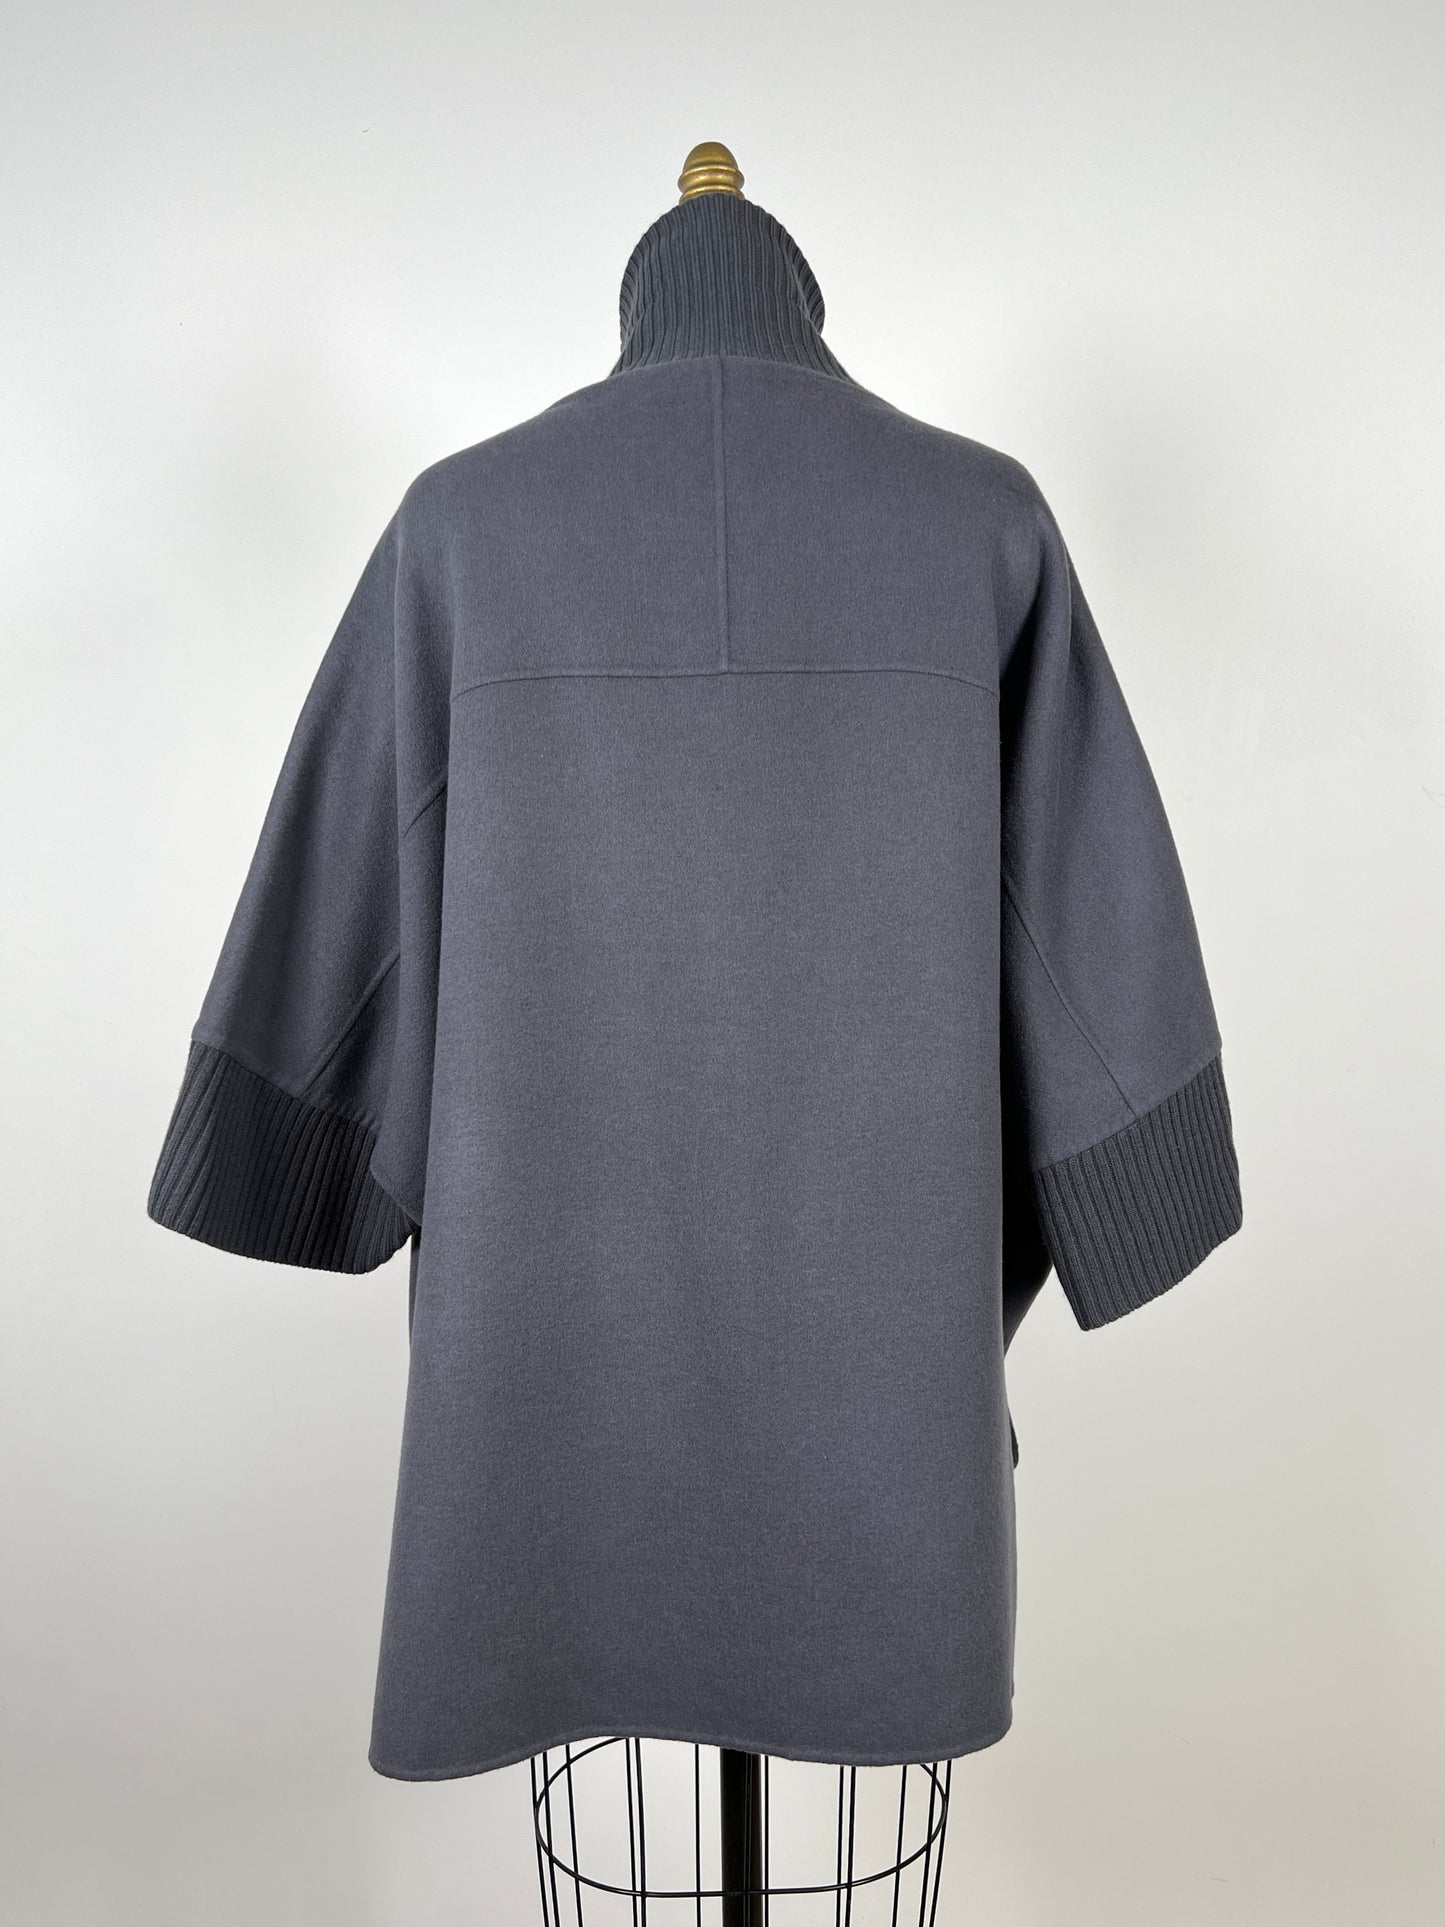 Veste cape en feutre de laine vierge gris (12 et 16)